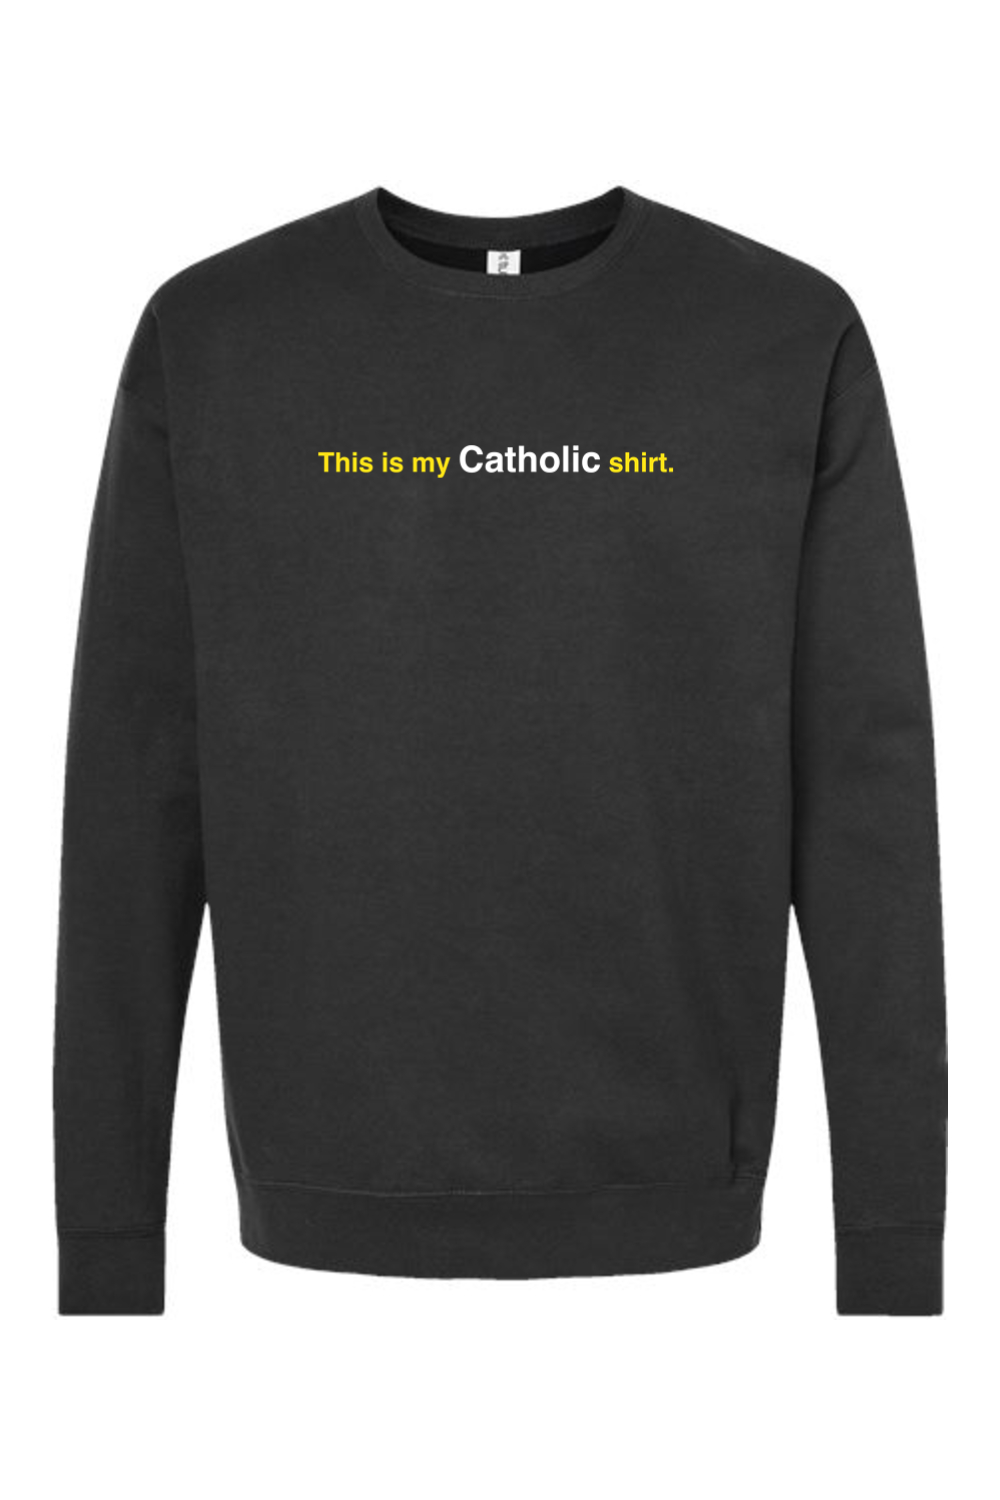 My Catholic Shirt - My Catholic Shirt Crewneck Sweatshirt